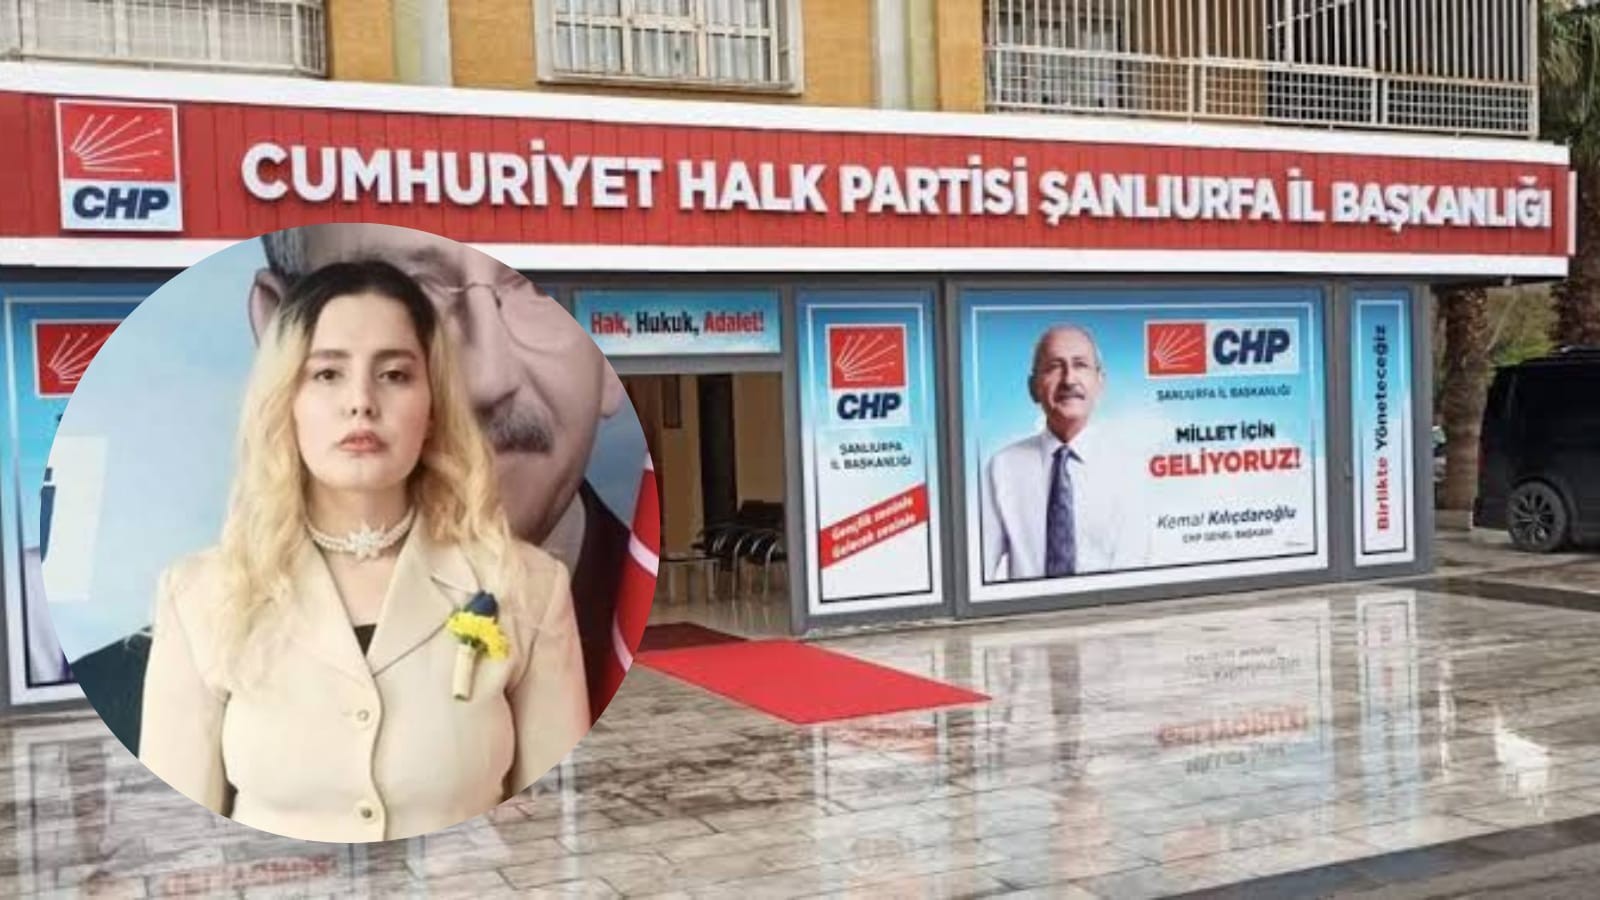 CHP Urfa eski başkandan partisindeki olaya kınama!;